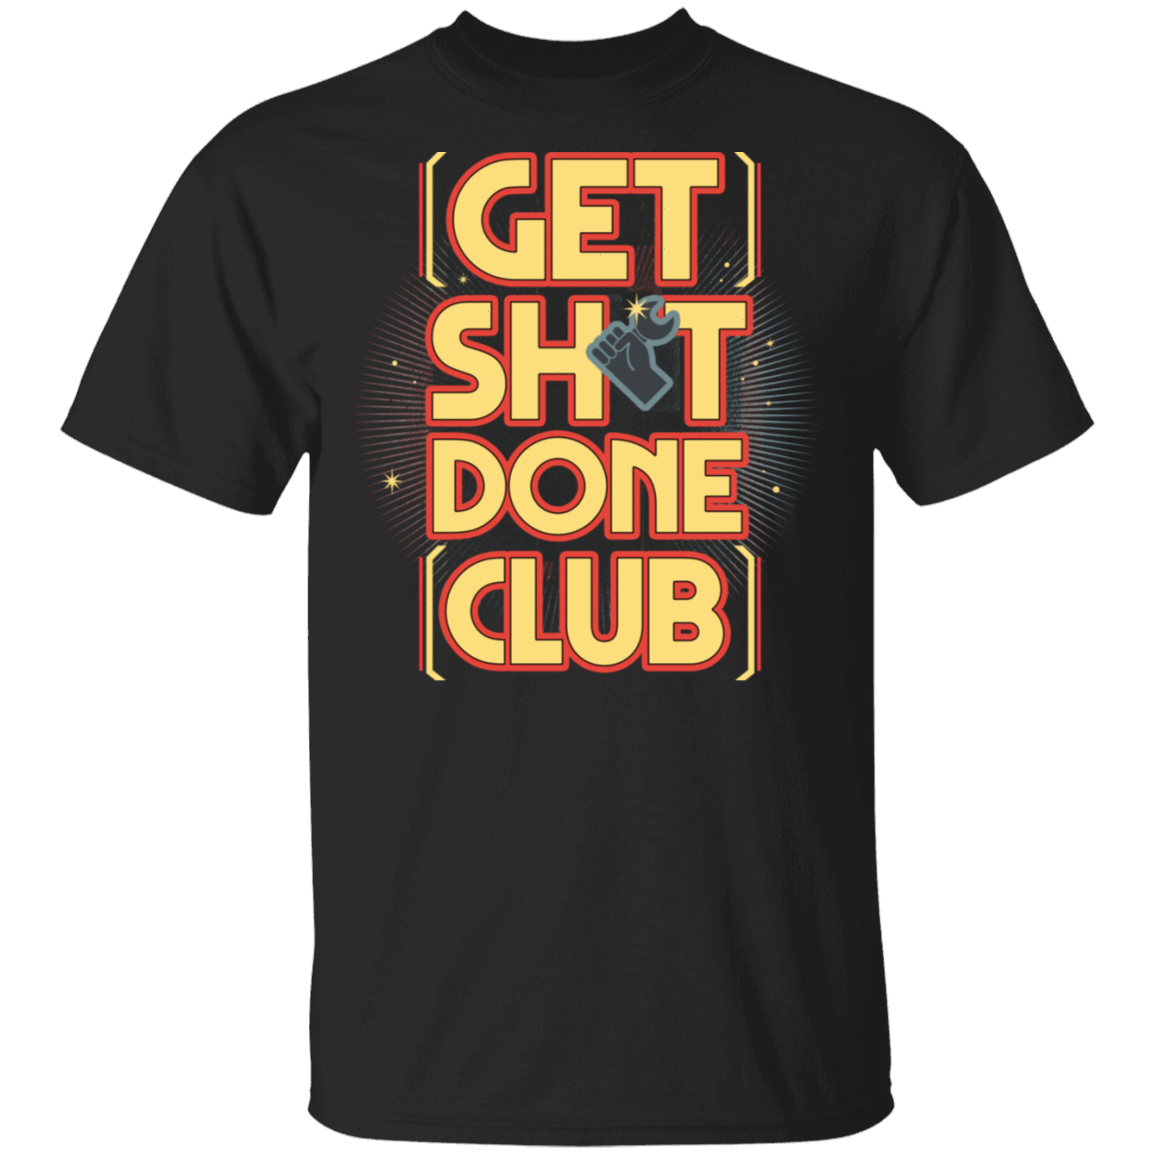 T-Shirts Black / S Get Shit Done Club T-Shirt